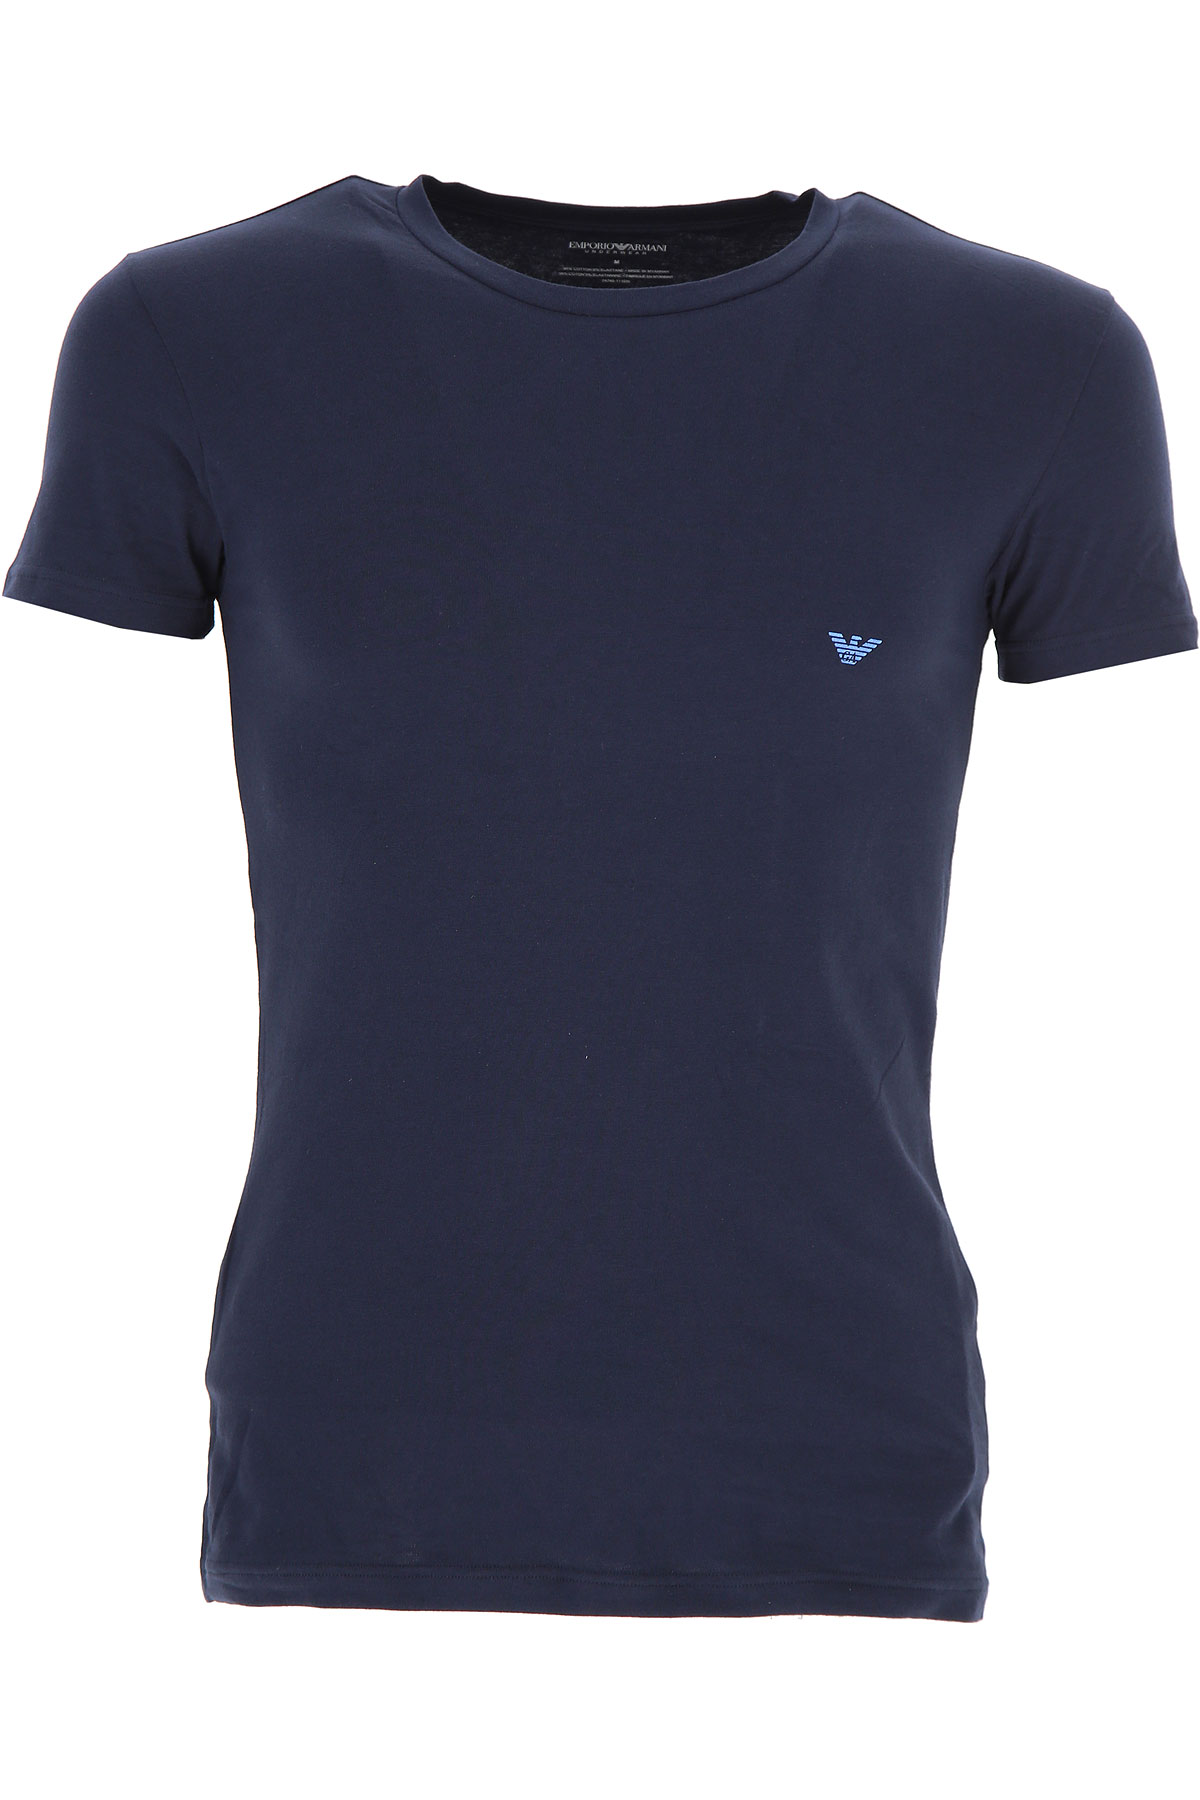 Emporio Armani T-shirt Homme , Bleu marine, Coton, 2017, L M S XL